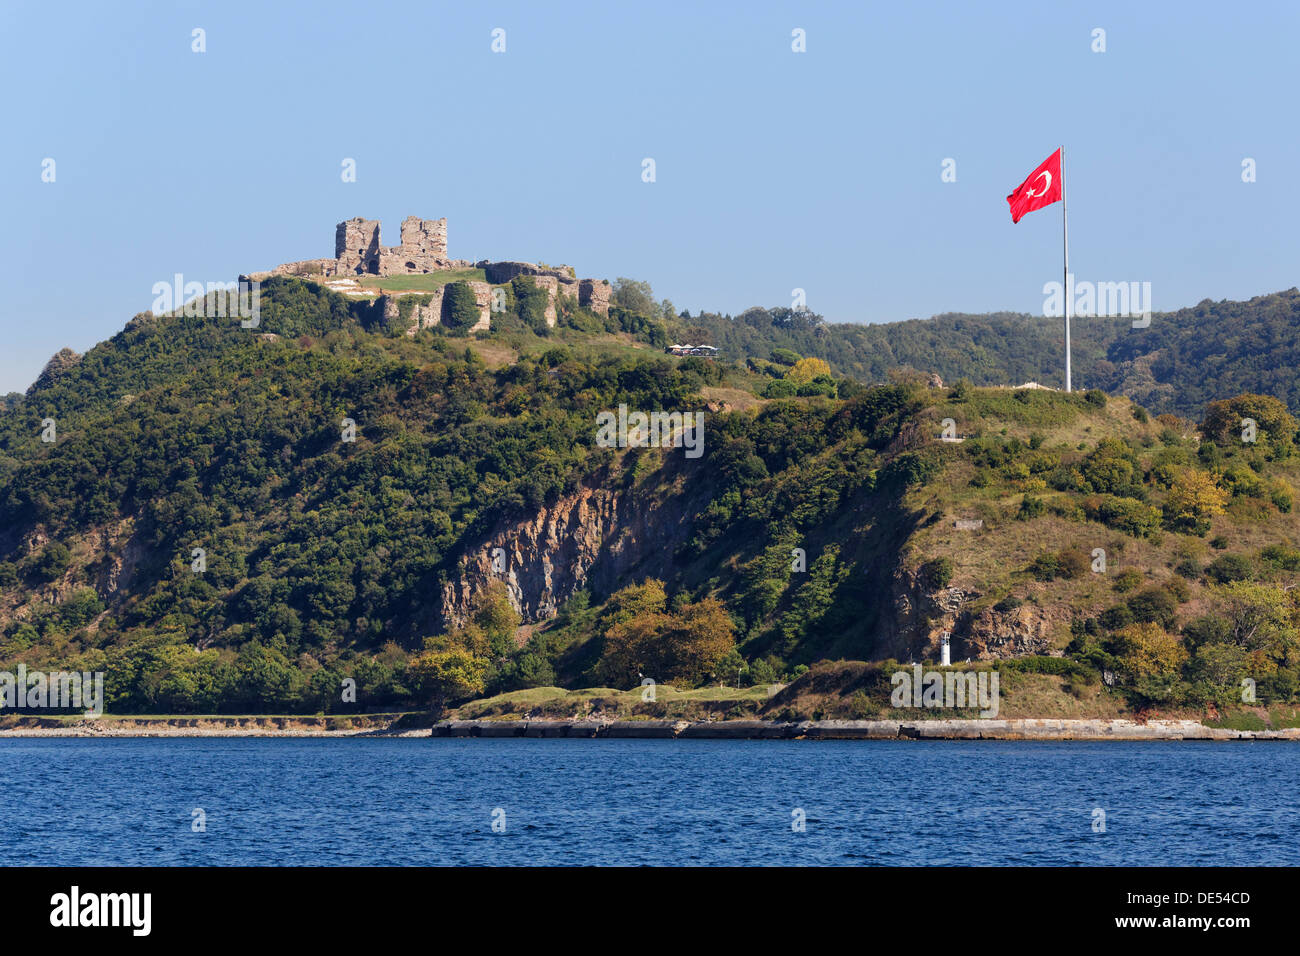 View from the Bosphorus towards the Genoese Castle or Yoros Kalesi, Bosporus, Anadolu Kavagi, Istanbul, Asian side Stock Photo